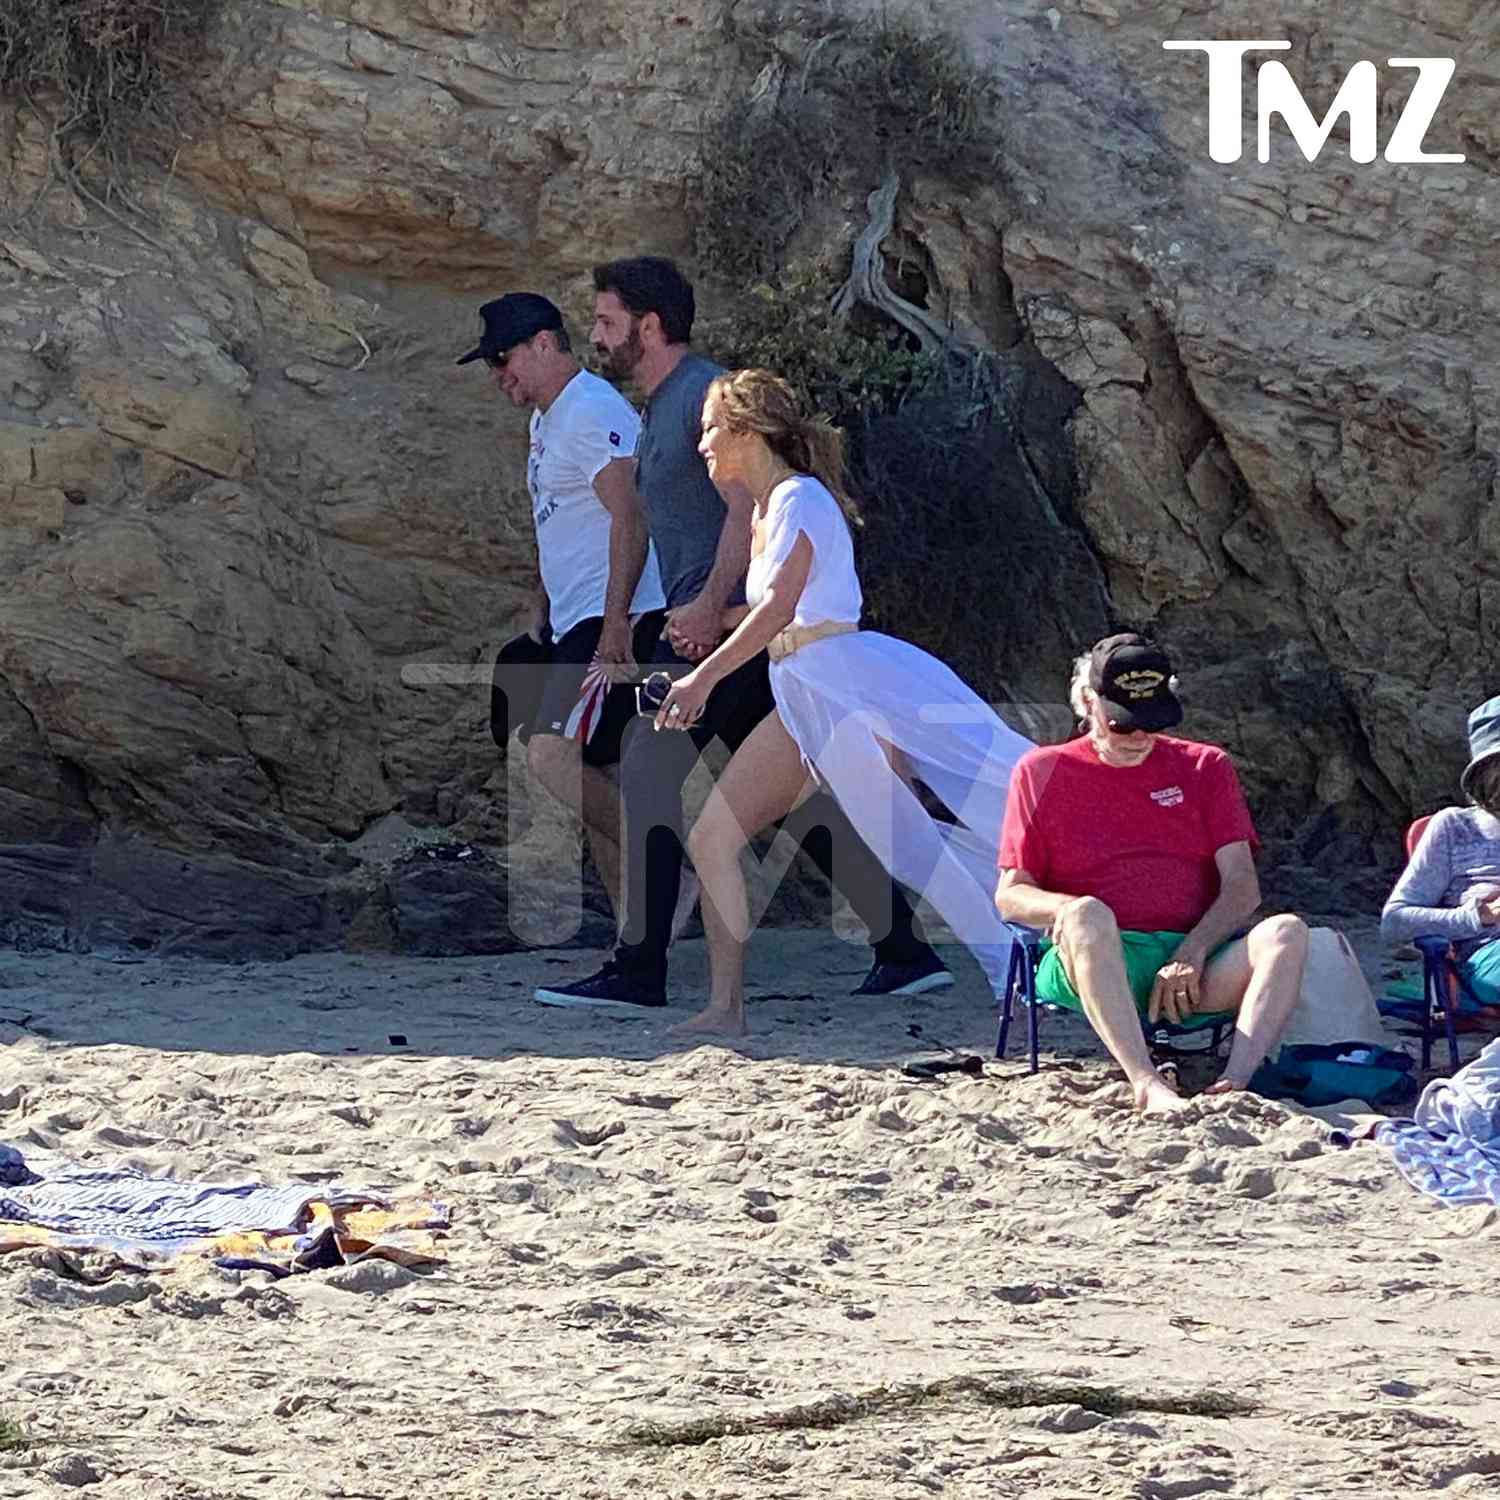 Matt Damon begleitet Ben Affleck und Jennifer Lopez auf Malibu Beach Stroll als Paar Händchen haltend